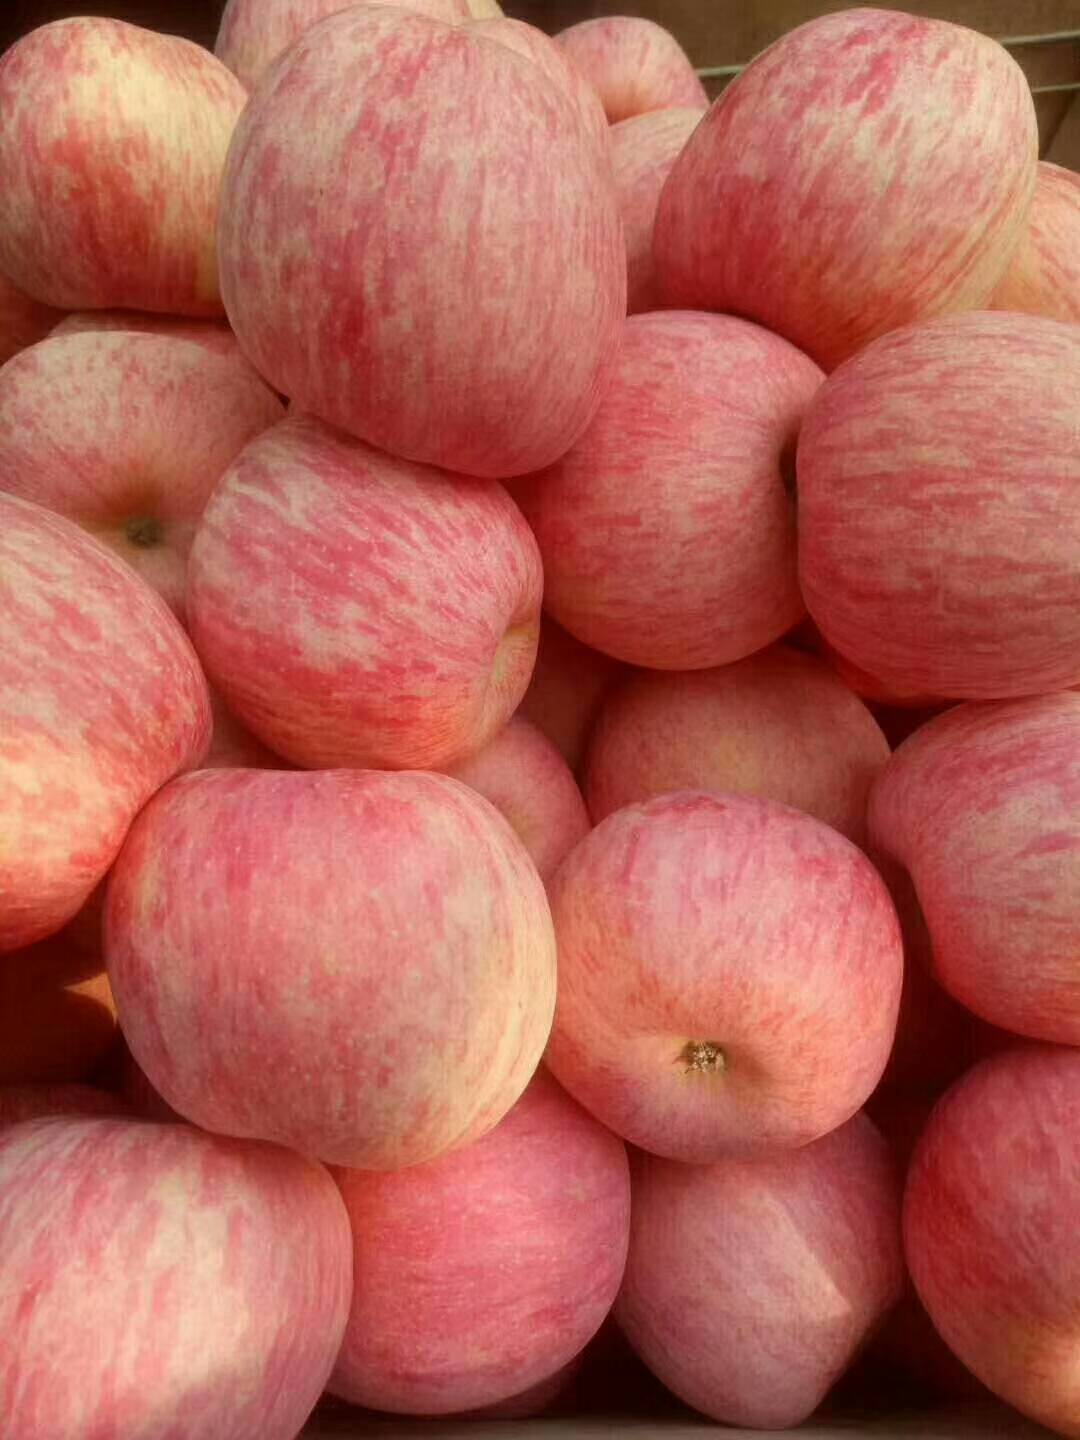 13505394663山东冷库红富士苹果大量供应，山东苹果基地常年供应苹果，苹果种植面积数百万亩，品种多，产地直销价格便宜，质量保证，果园看货，以质论价，常年供